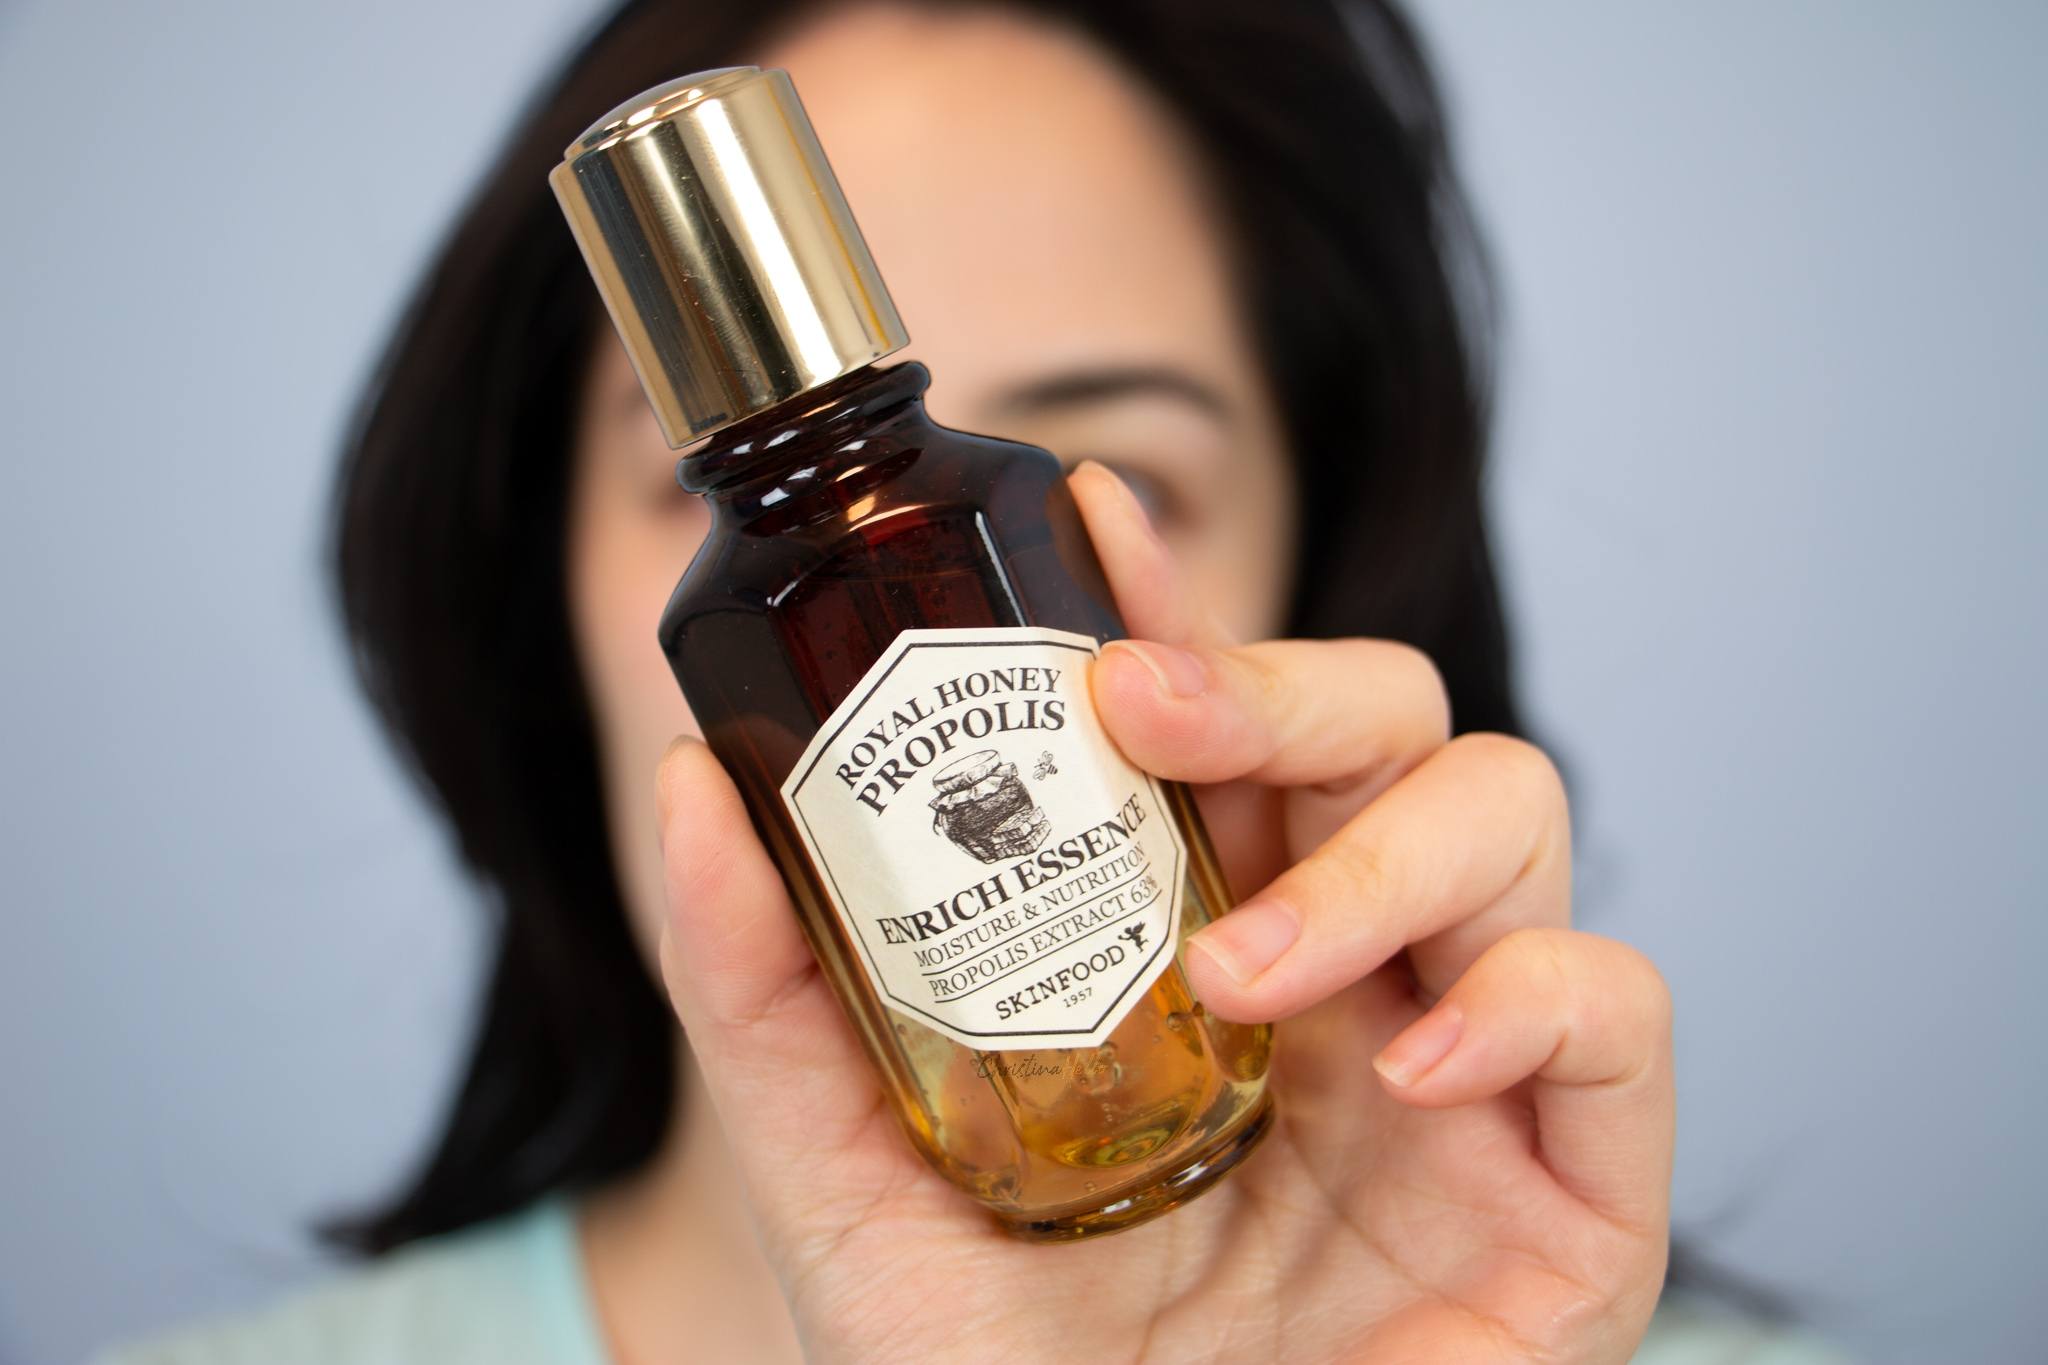 Skinfood royal honey propolis enrich essence review I Best propolis ampoule  ever! – Christinahello